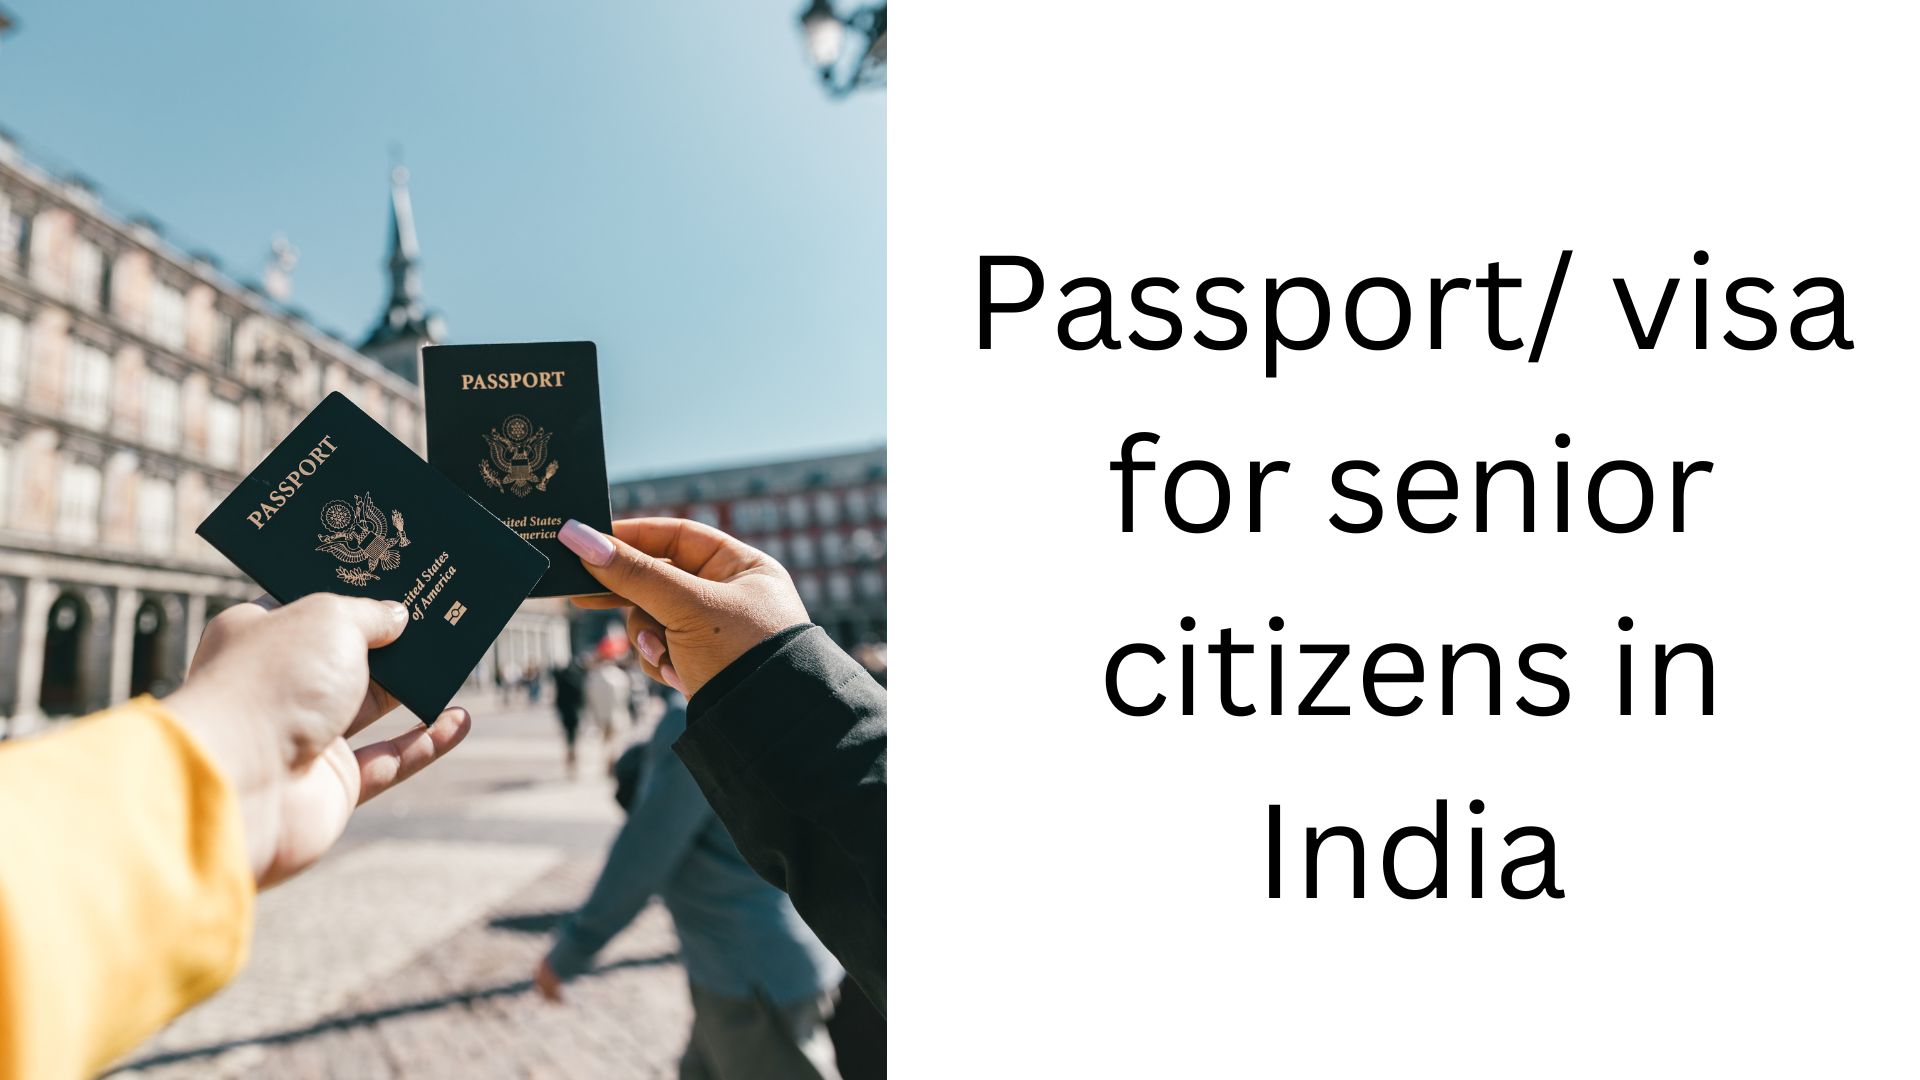 Passport/ visa for senior citizens in India